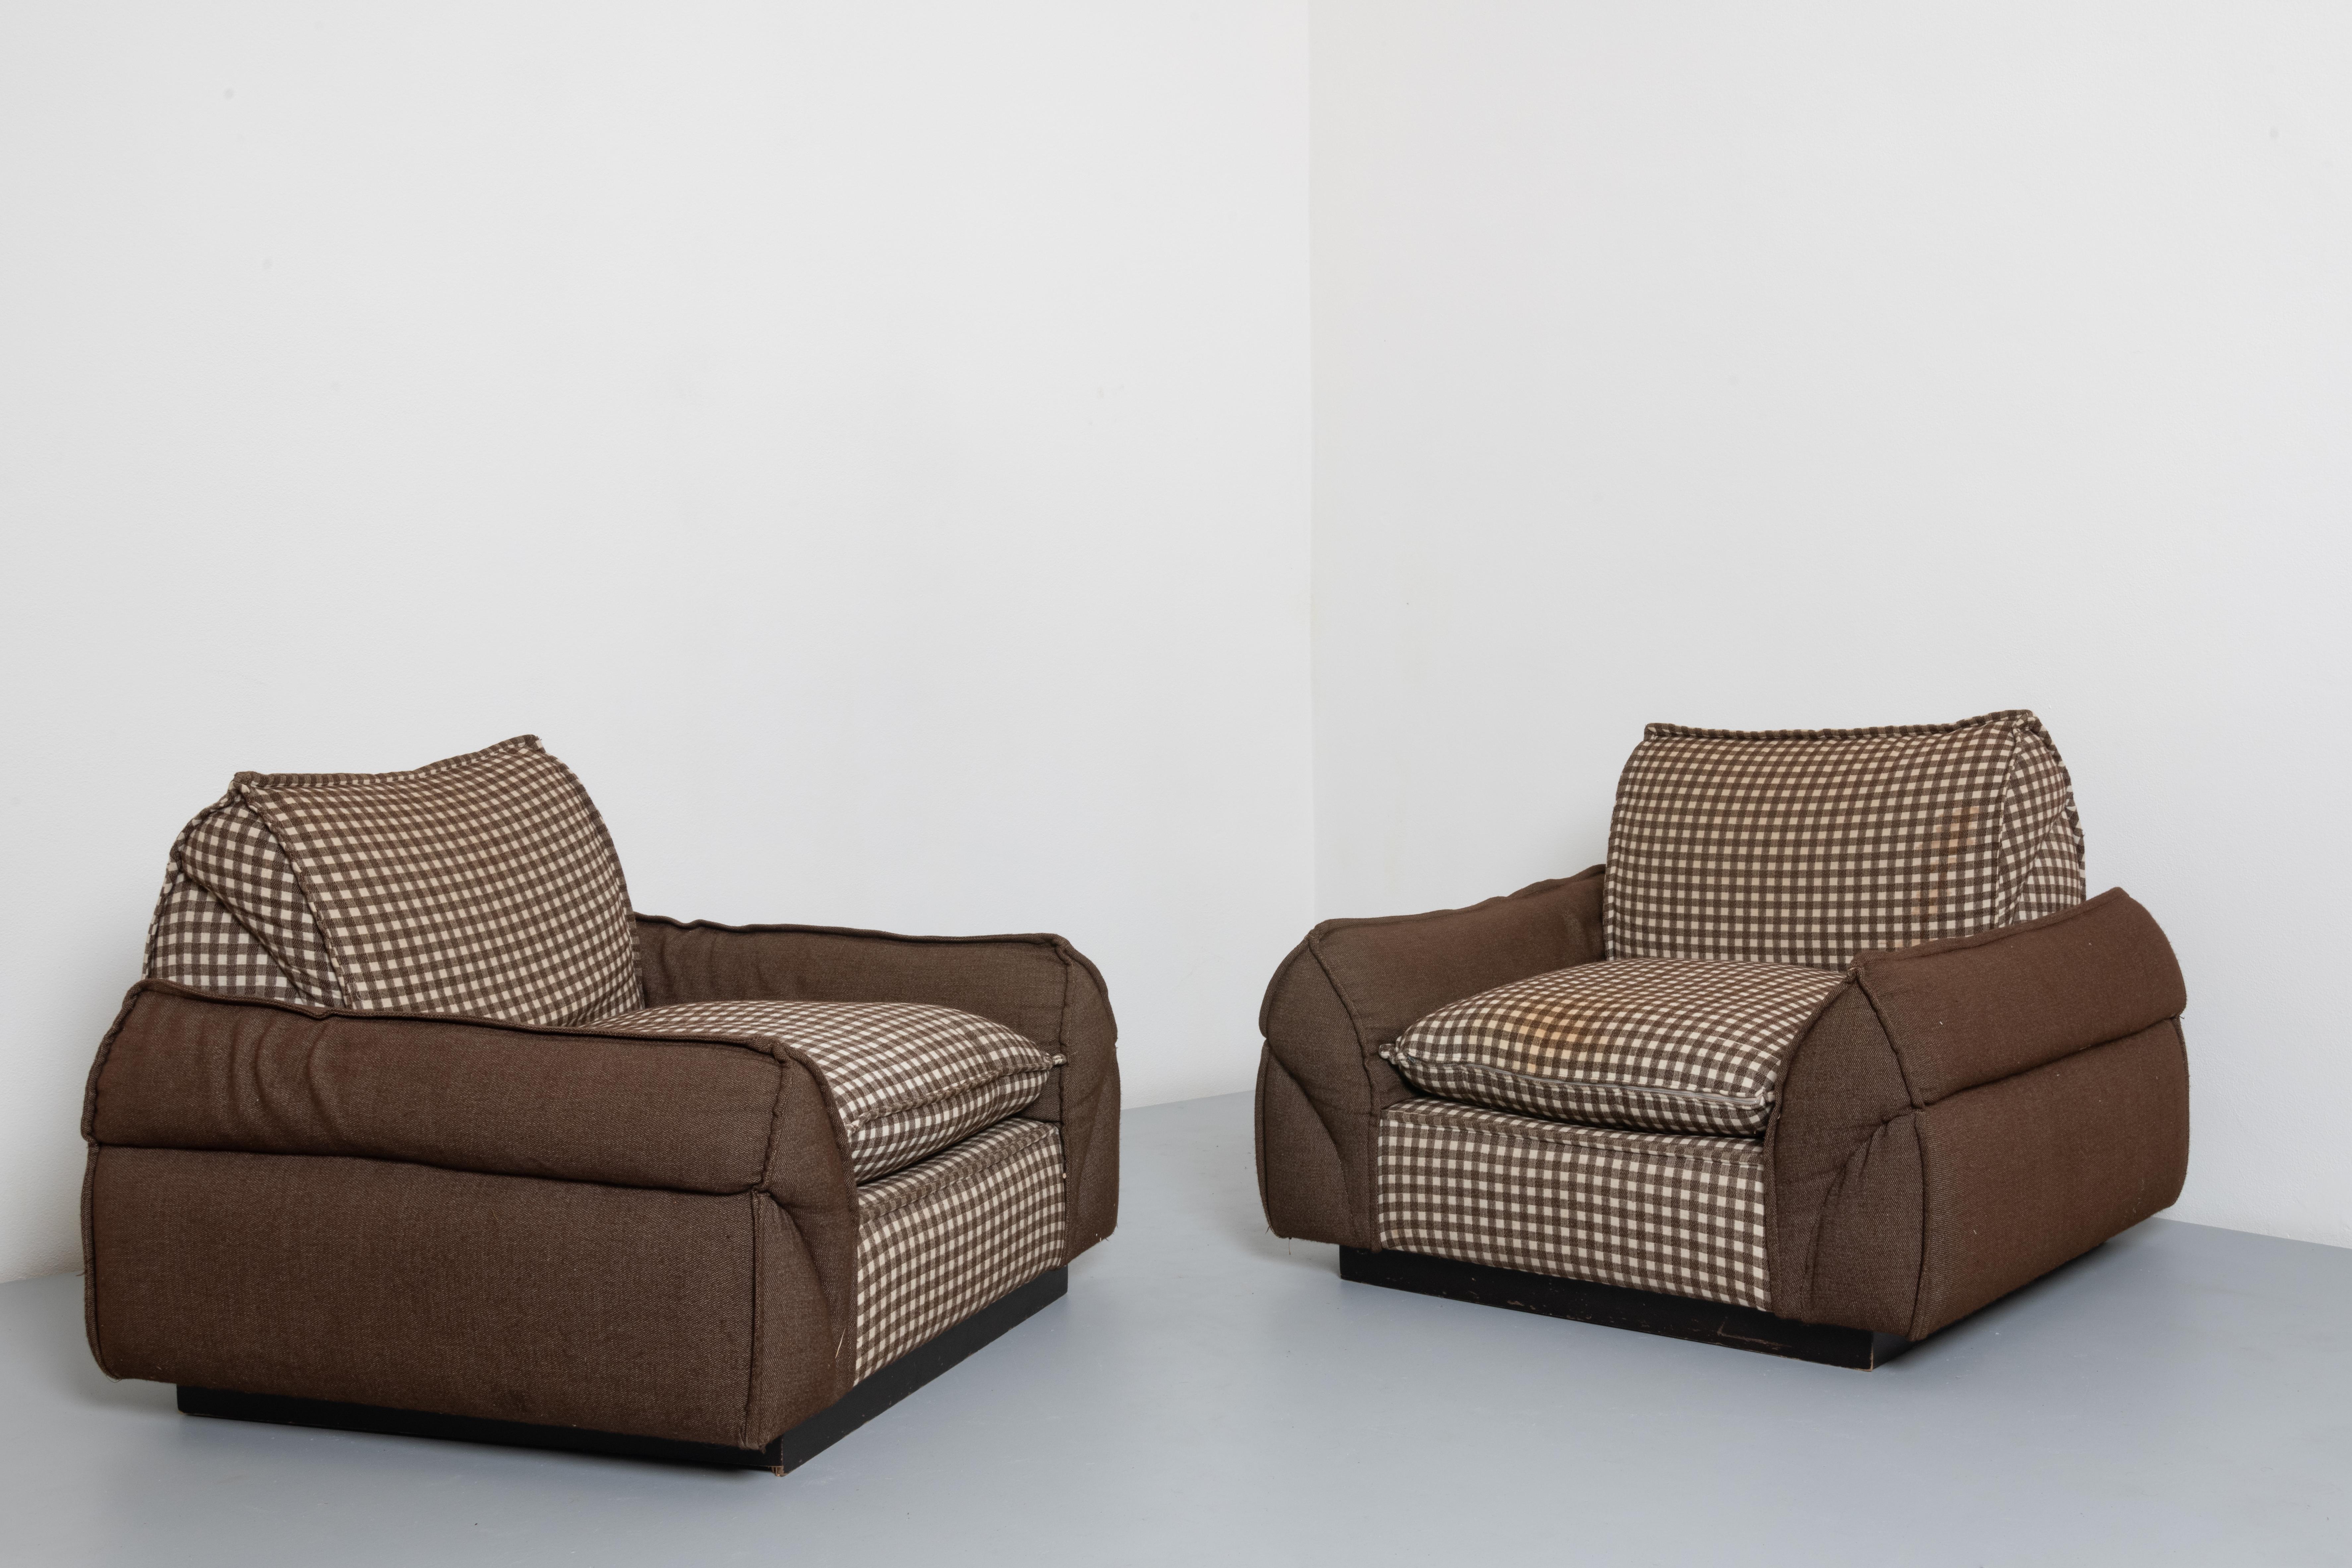 Paire de chaises longues italiennes volumineuses en tissu.
Ces deux fauteuils s'adaptent dans un salon moderne pour apporter du confort et une touche de style. Ce sont des fauteuils confortables et robustes à forte personnalité. L'originalité de ce